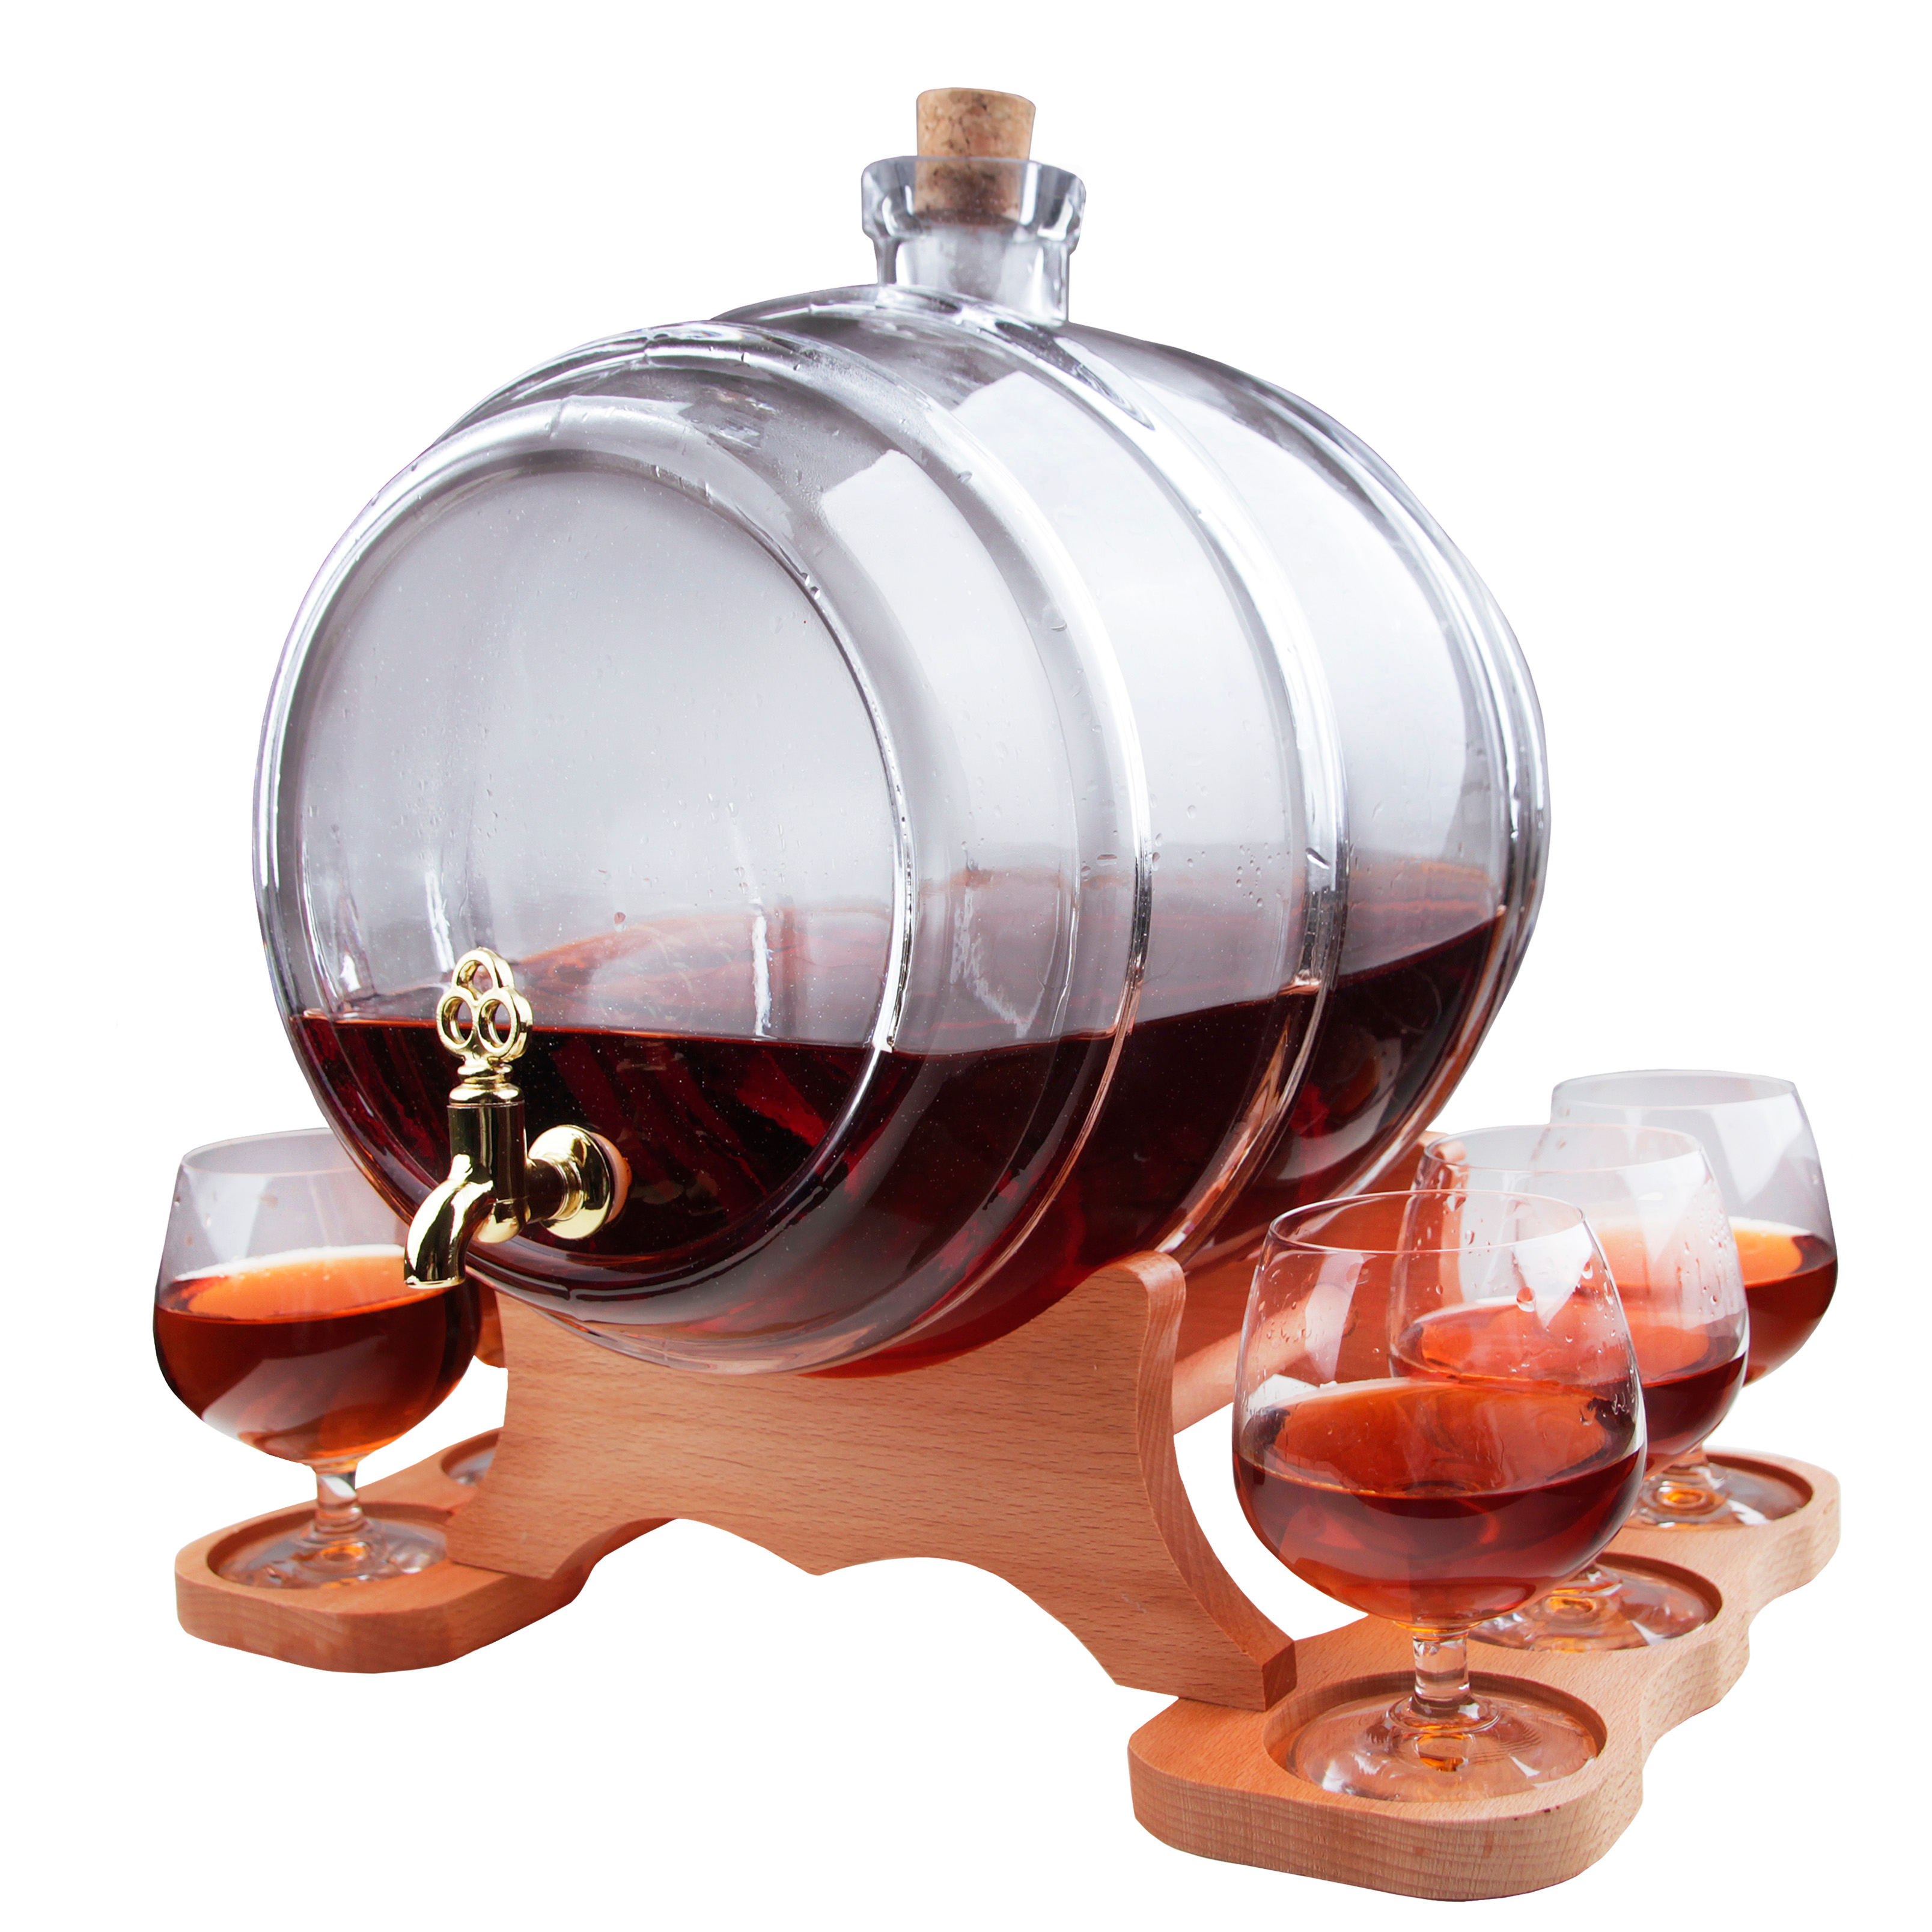 Skleněný sud 10L průhledný s dřevěným podstavcem, kohoutkem a vínovými sklenicem